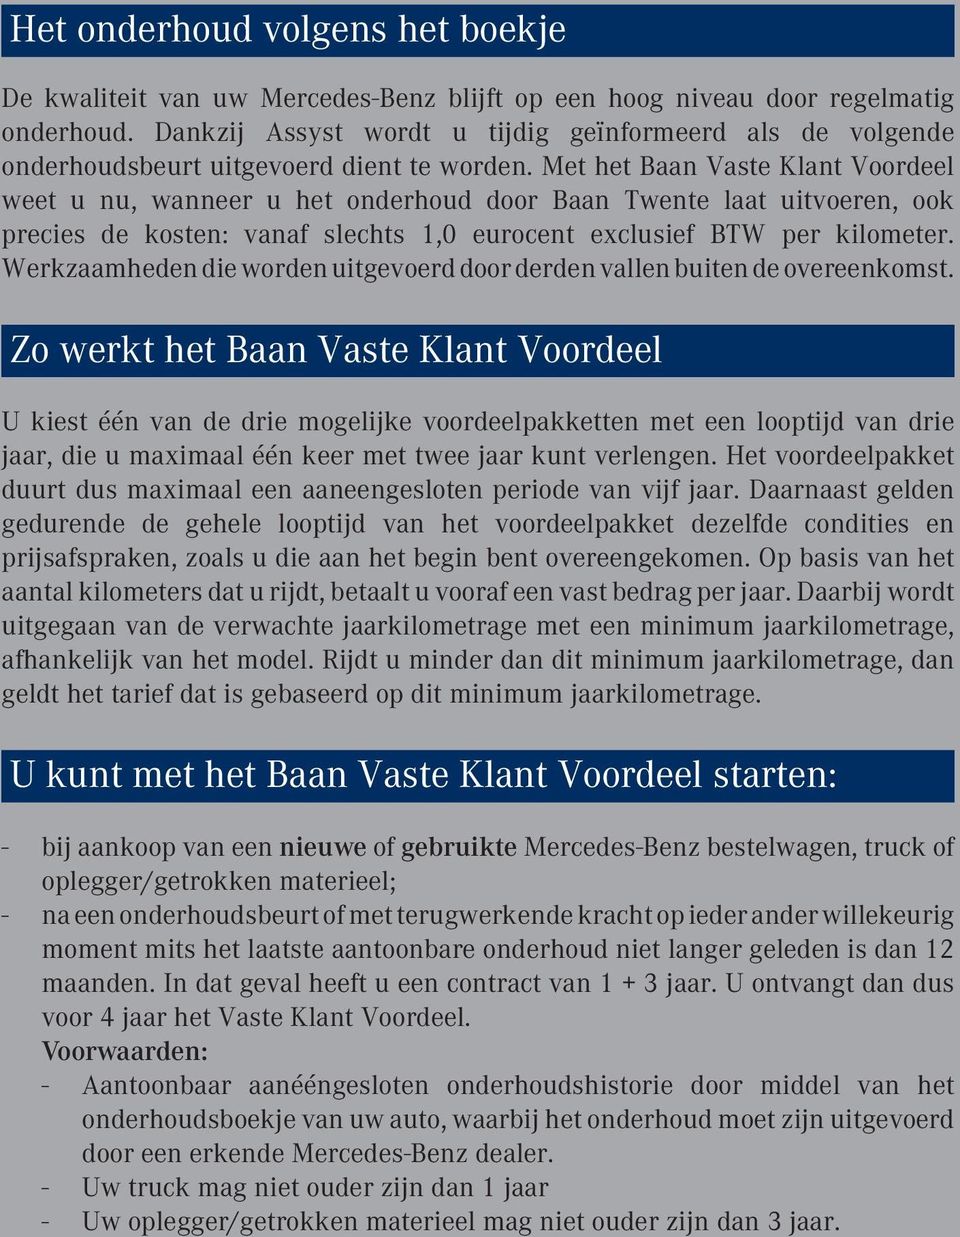 Met het Baan Vaste Klant Voordeel weet u nu, wanneer u het onderhoud door Baan Twente laat uitvoeren, ook precies de kosten: vanaf slechts 1,0 eurocent exclusief BTW per kilometer.